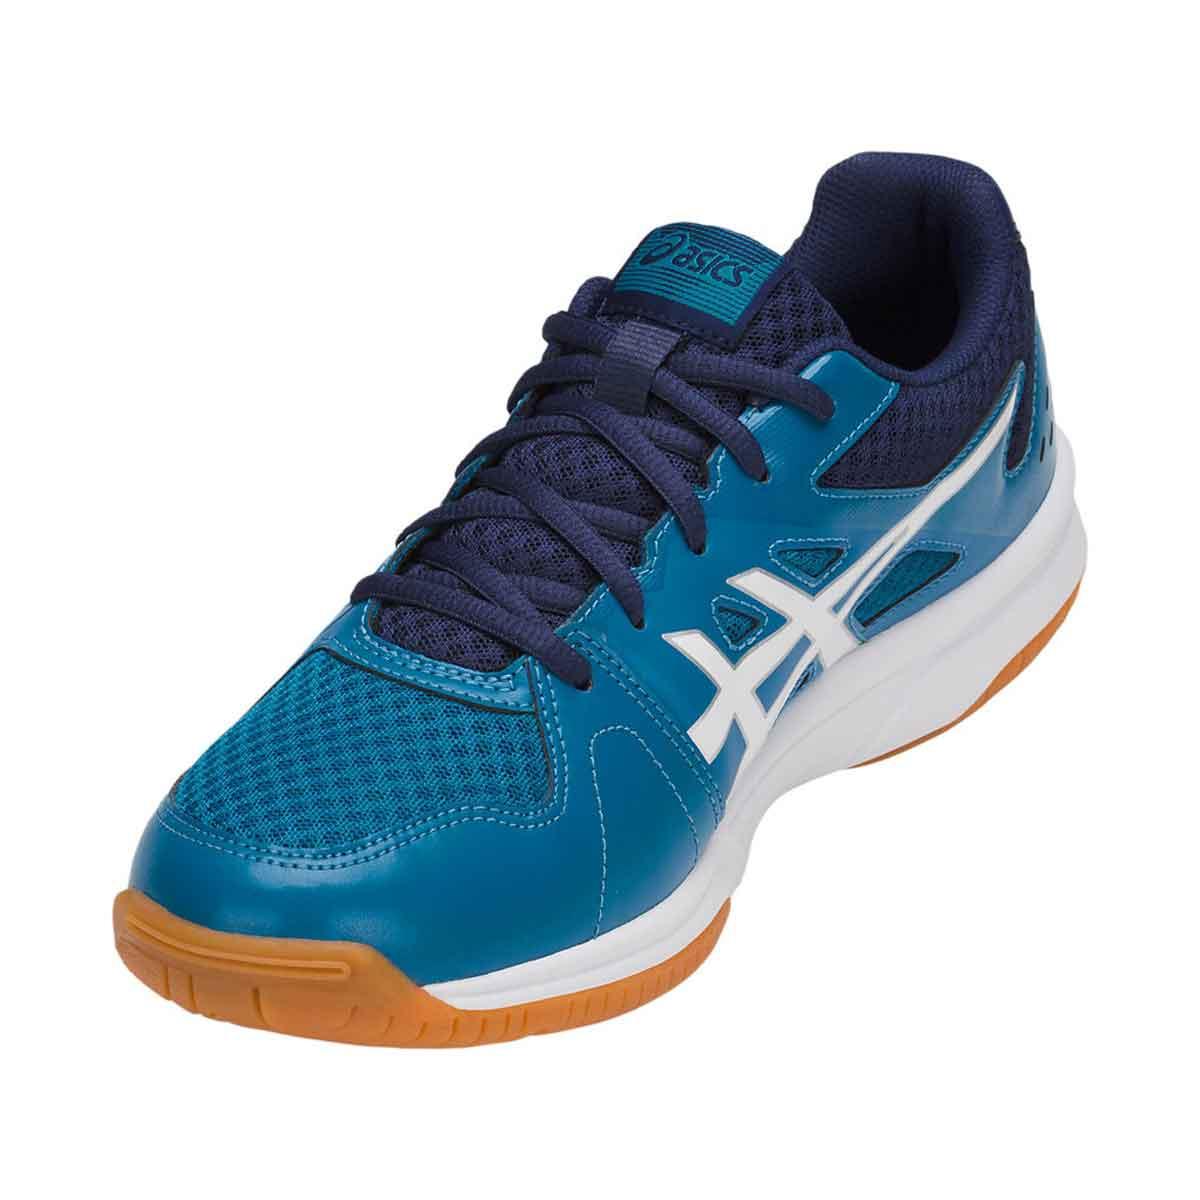 vasteland toenemen Bij naam Buy Asics Upcourt 3 Indoor Court Shoes (Race Blue/White) Online